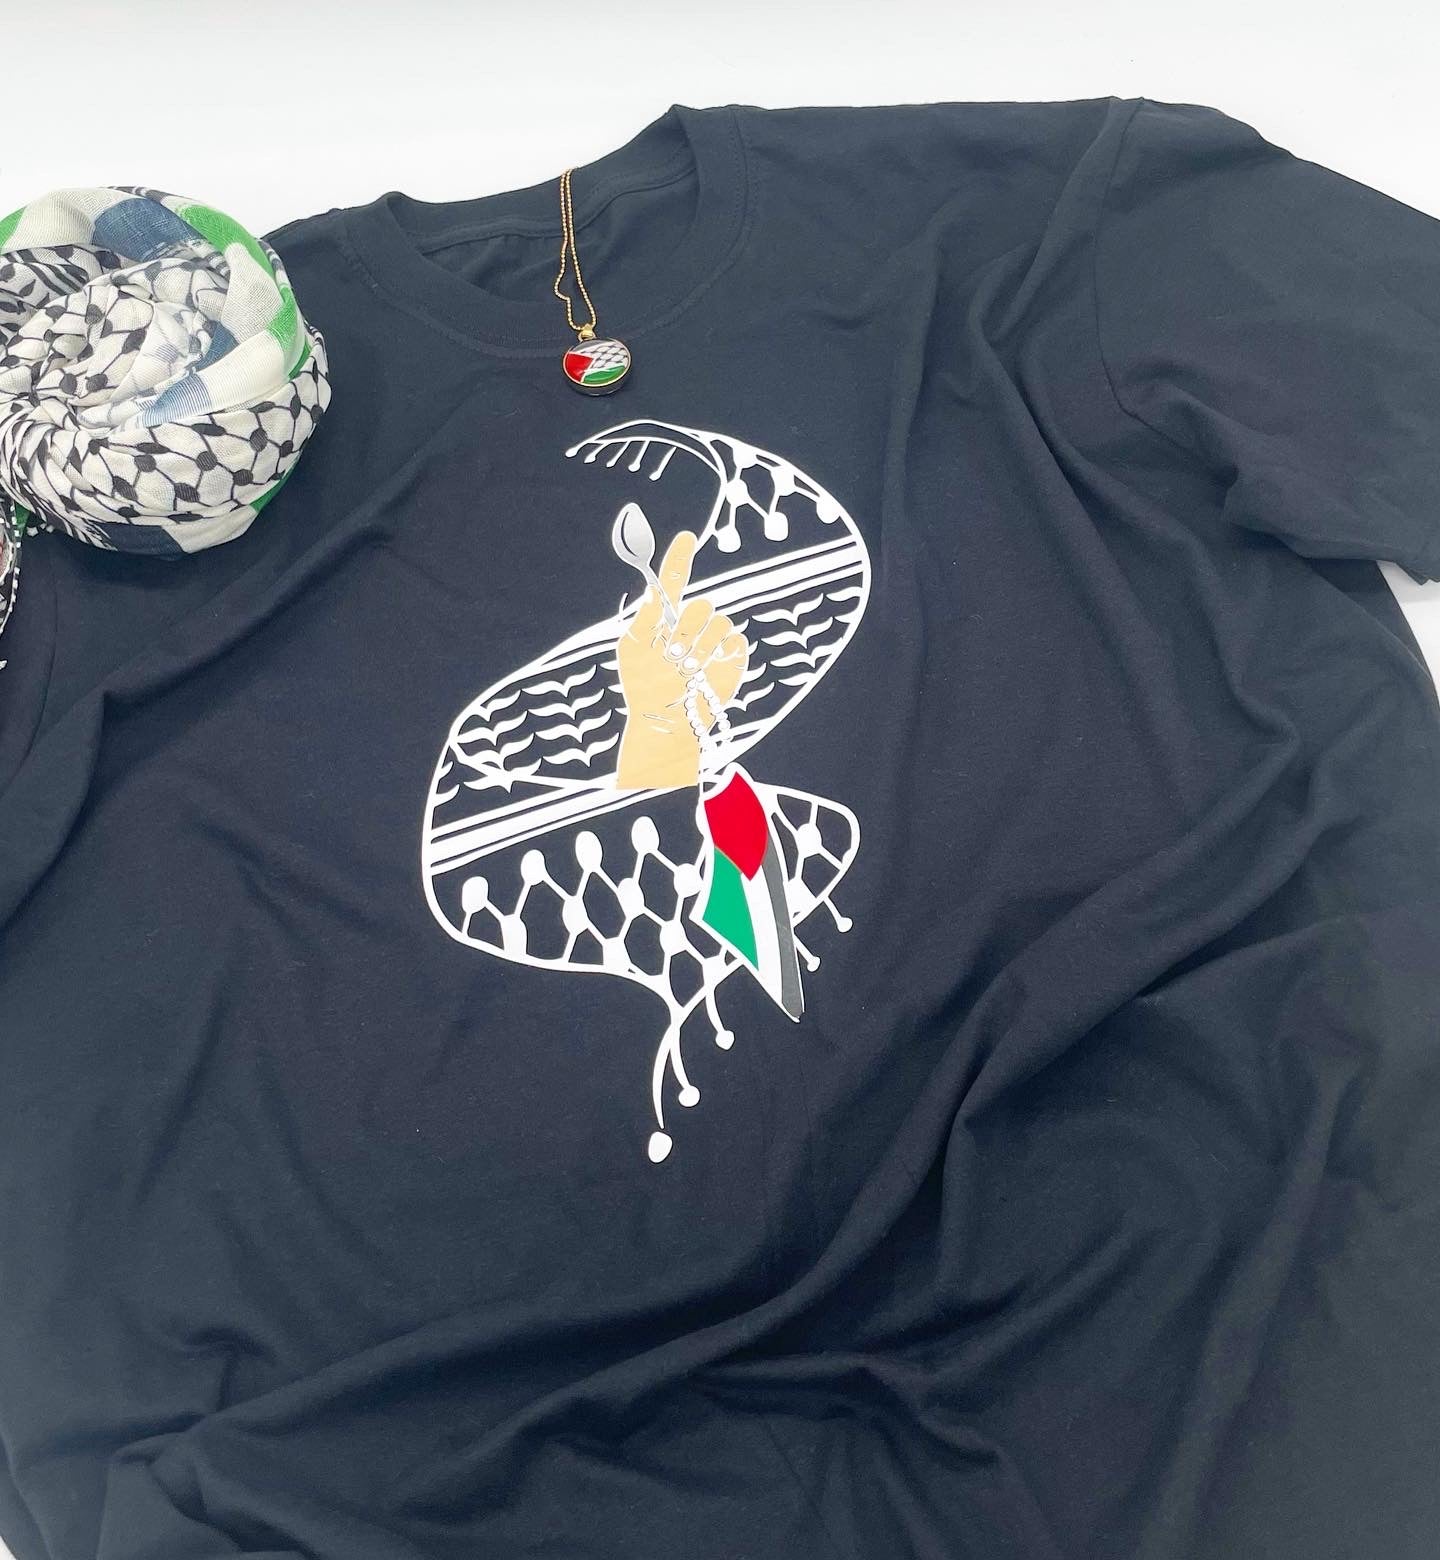 Free palestine Palestinian hoodie kufiya spoon design